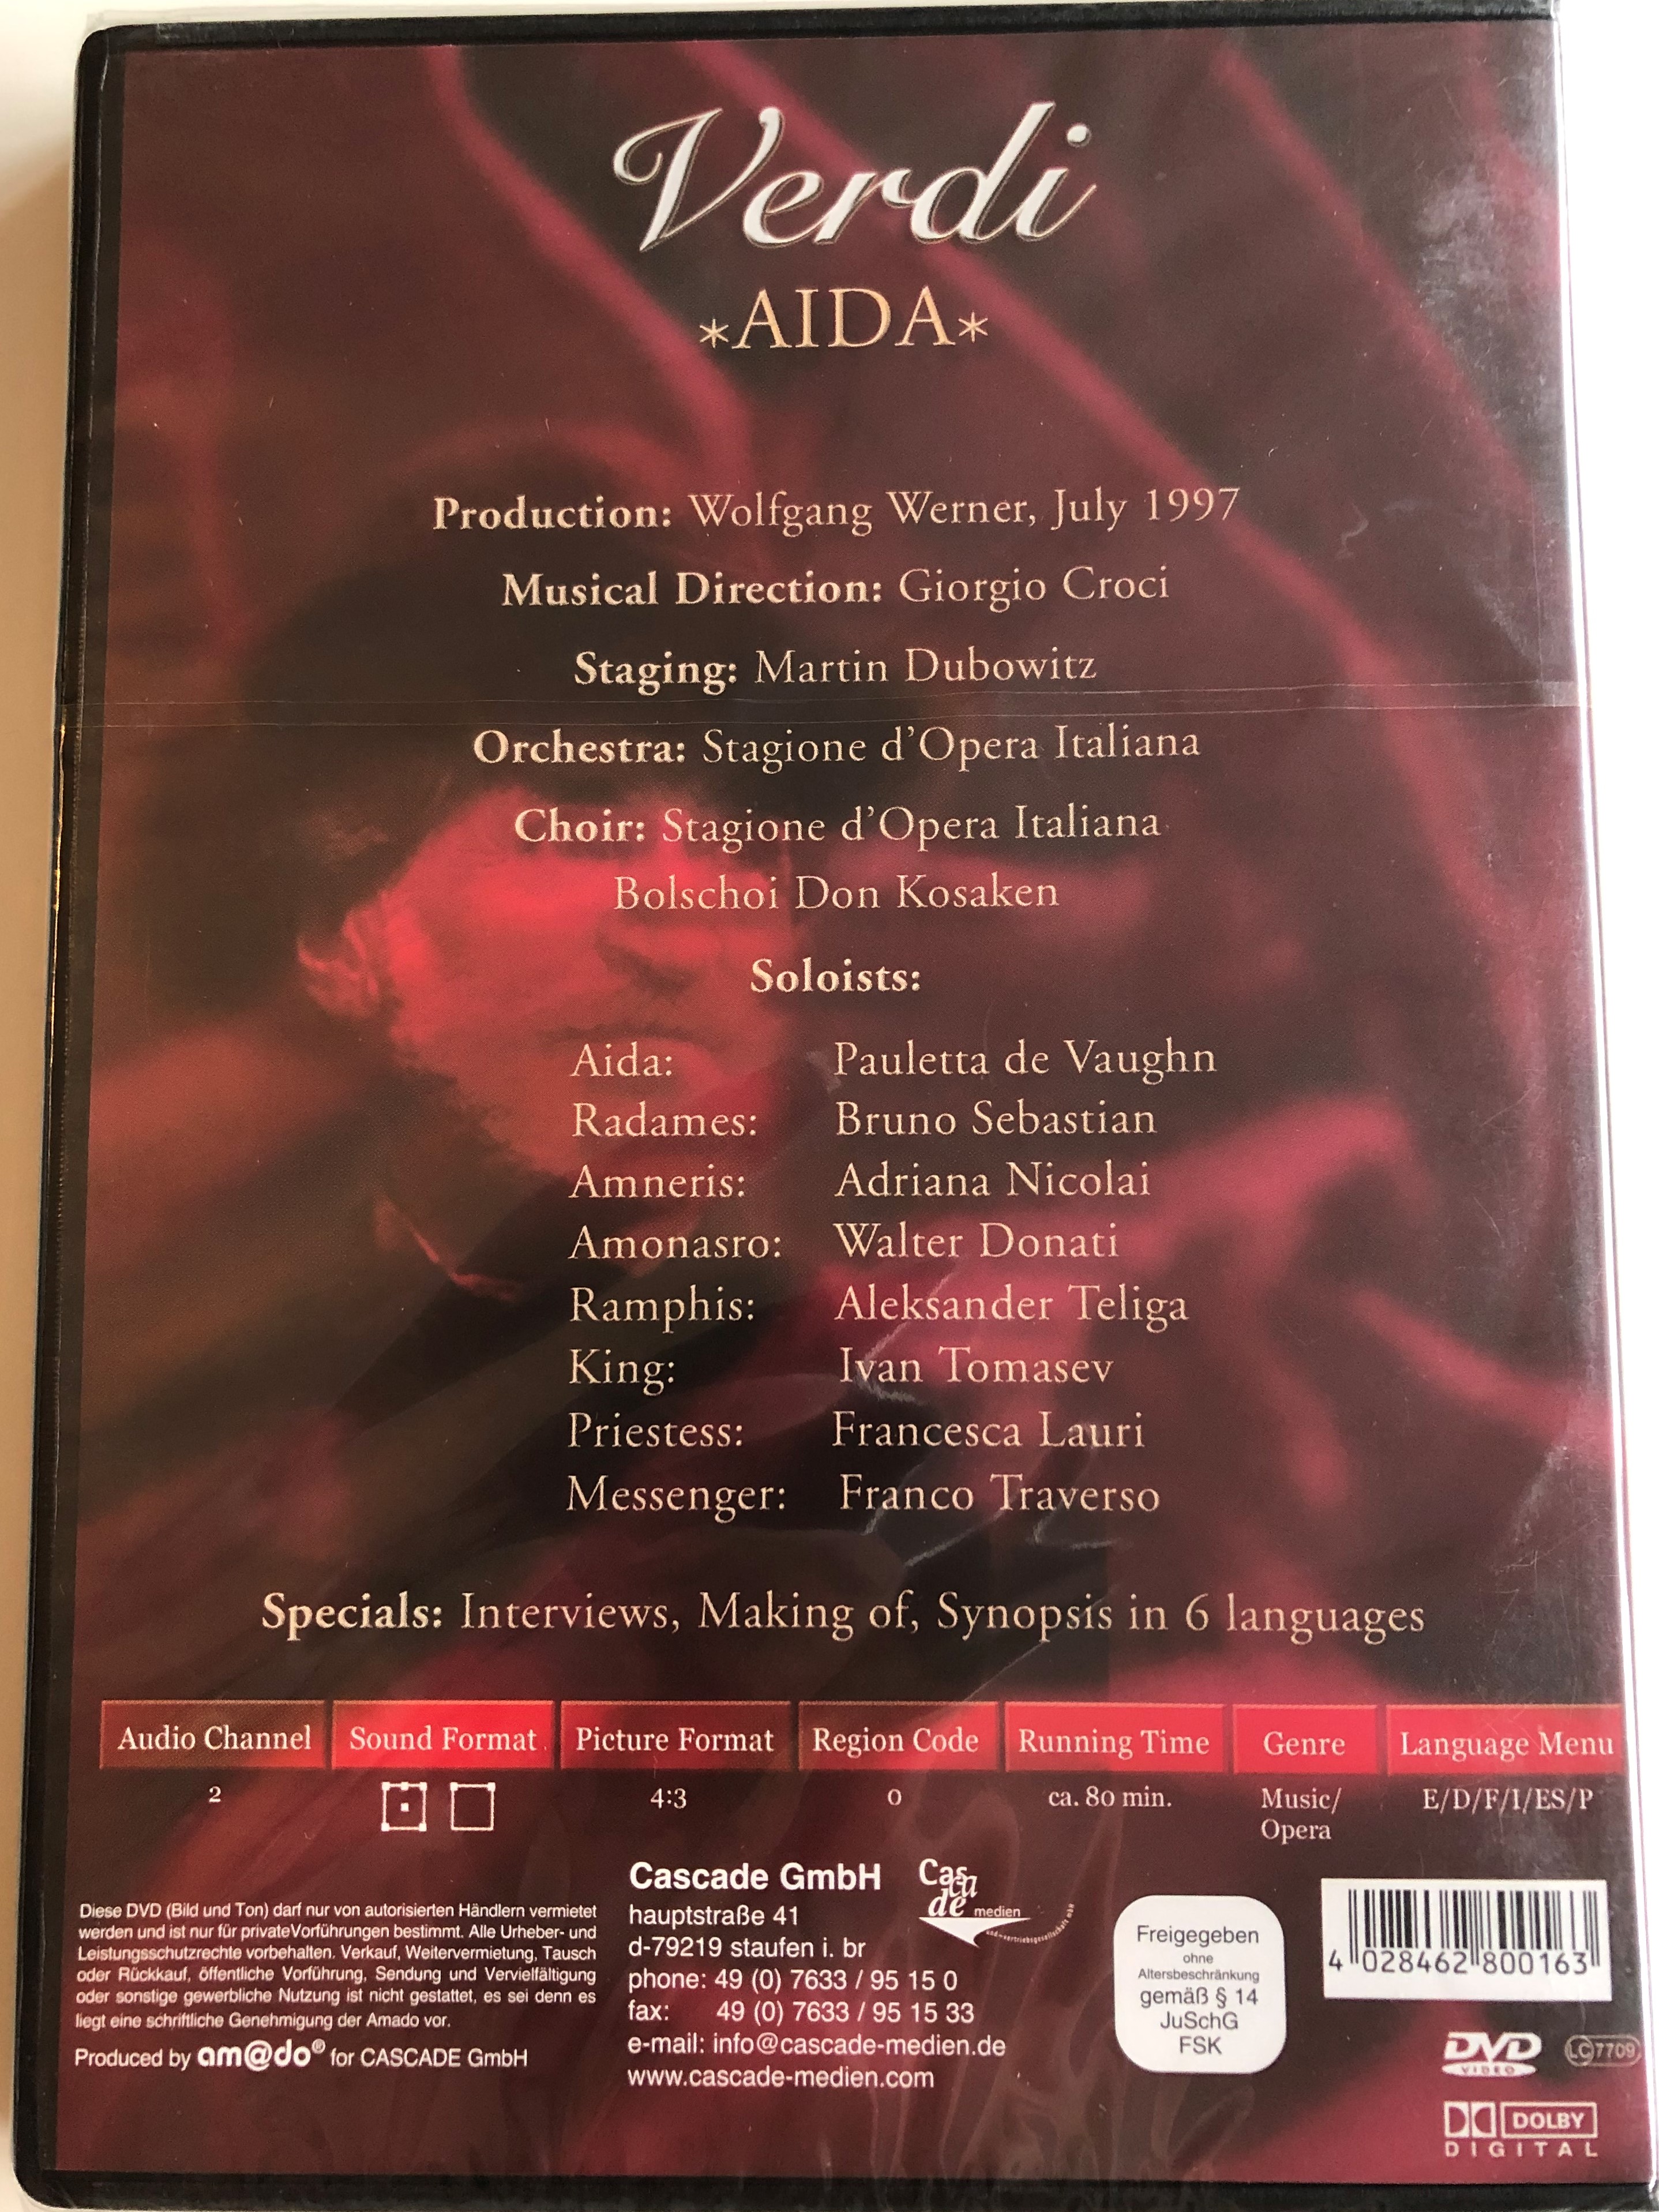 verdi-aida-opera-in-4-acts-stagione-d-opera-italiana-giorgio-croci-silverline-classics-cascade-medien-dvd-2003-80016-2-.jpg